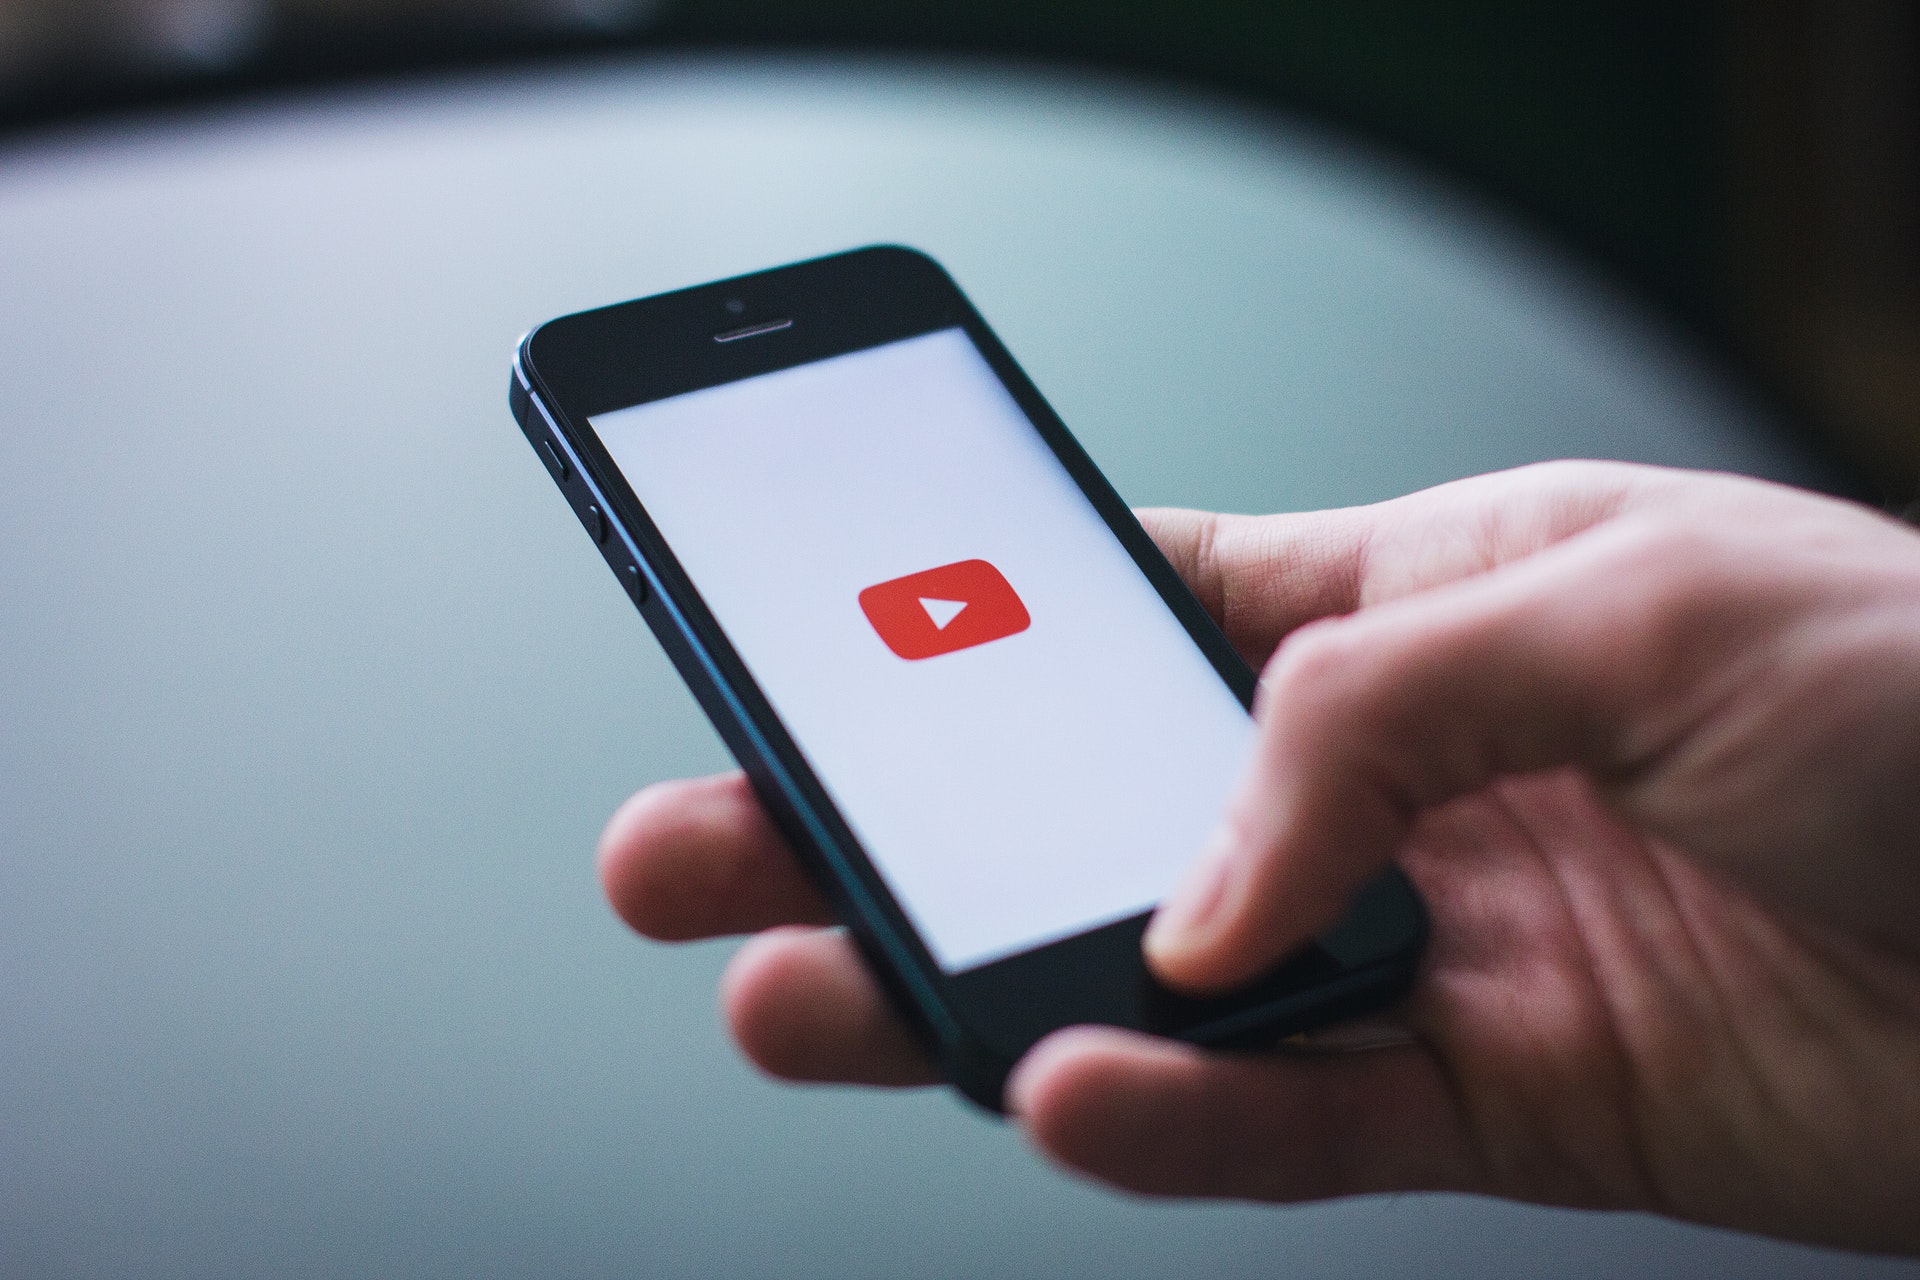 YouTube dla reklamodawców - zarządzanie bezpieczeństwem i spójnością marki YouTube YouTube dla reklamodawcow zarzadzanie bezpieczenstwem i spojnoscia marki